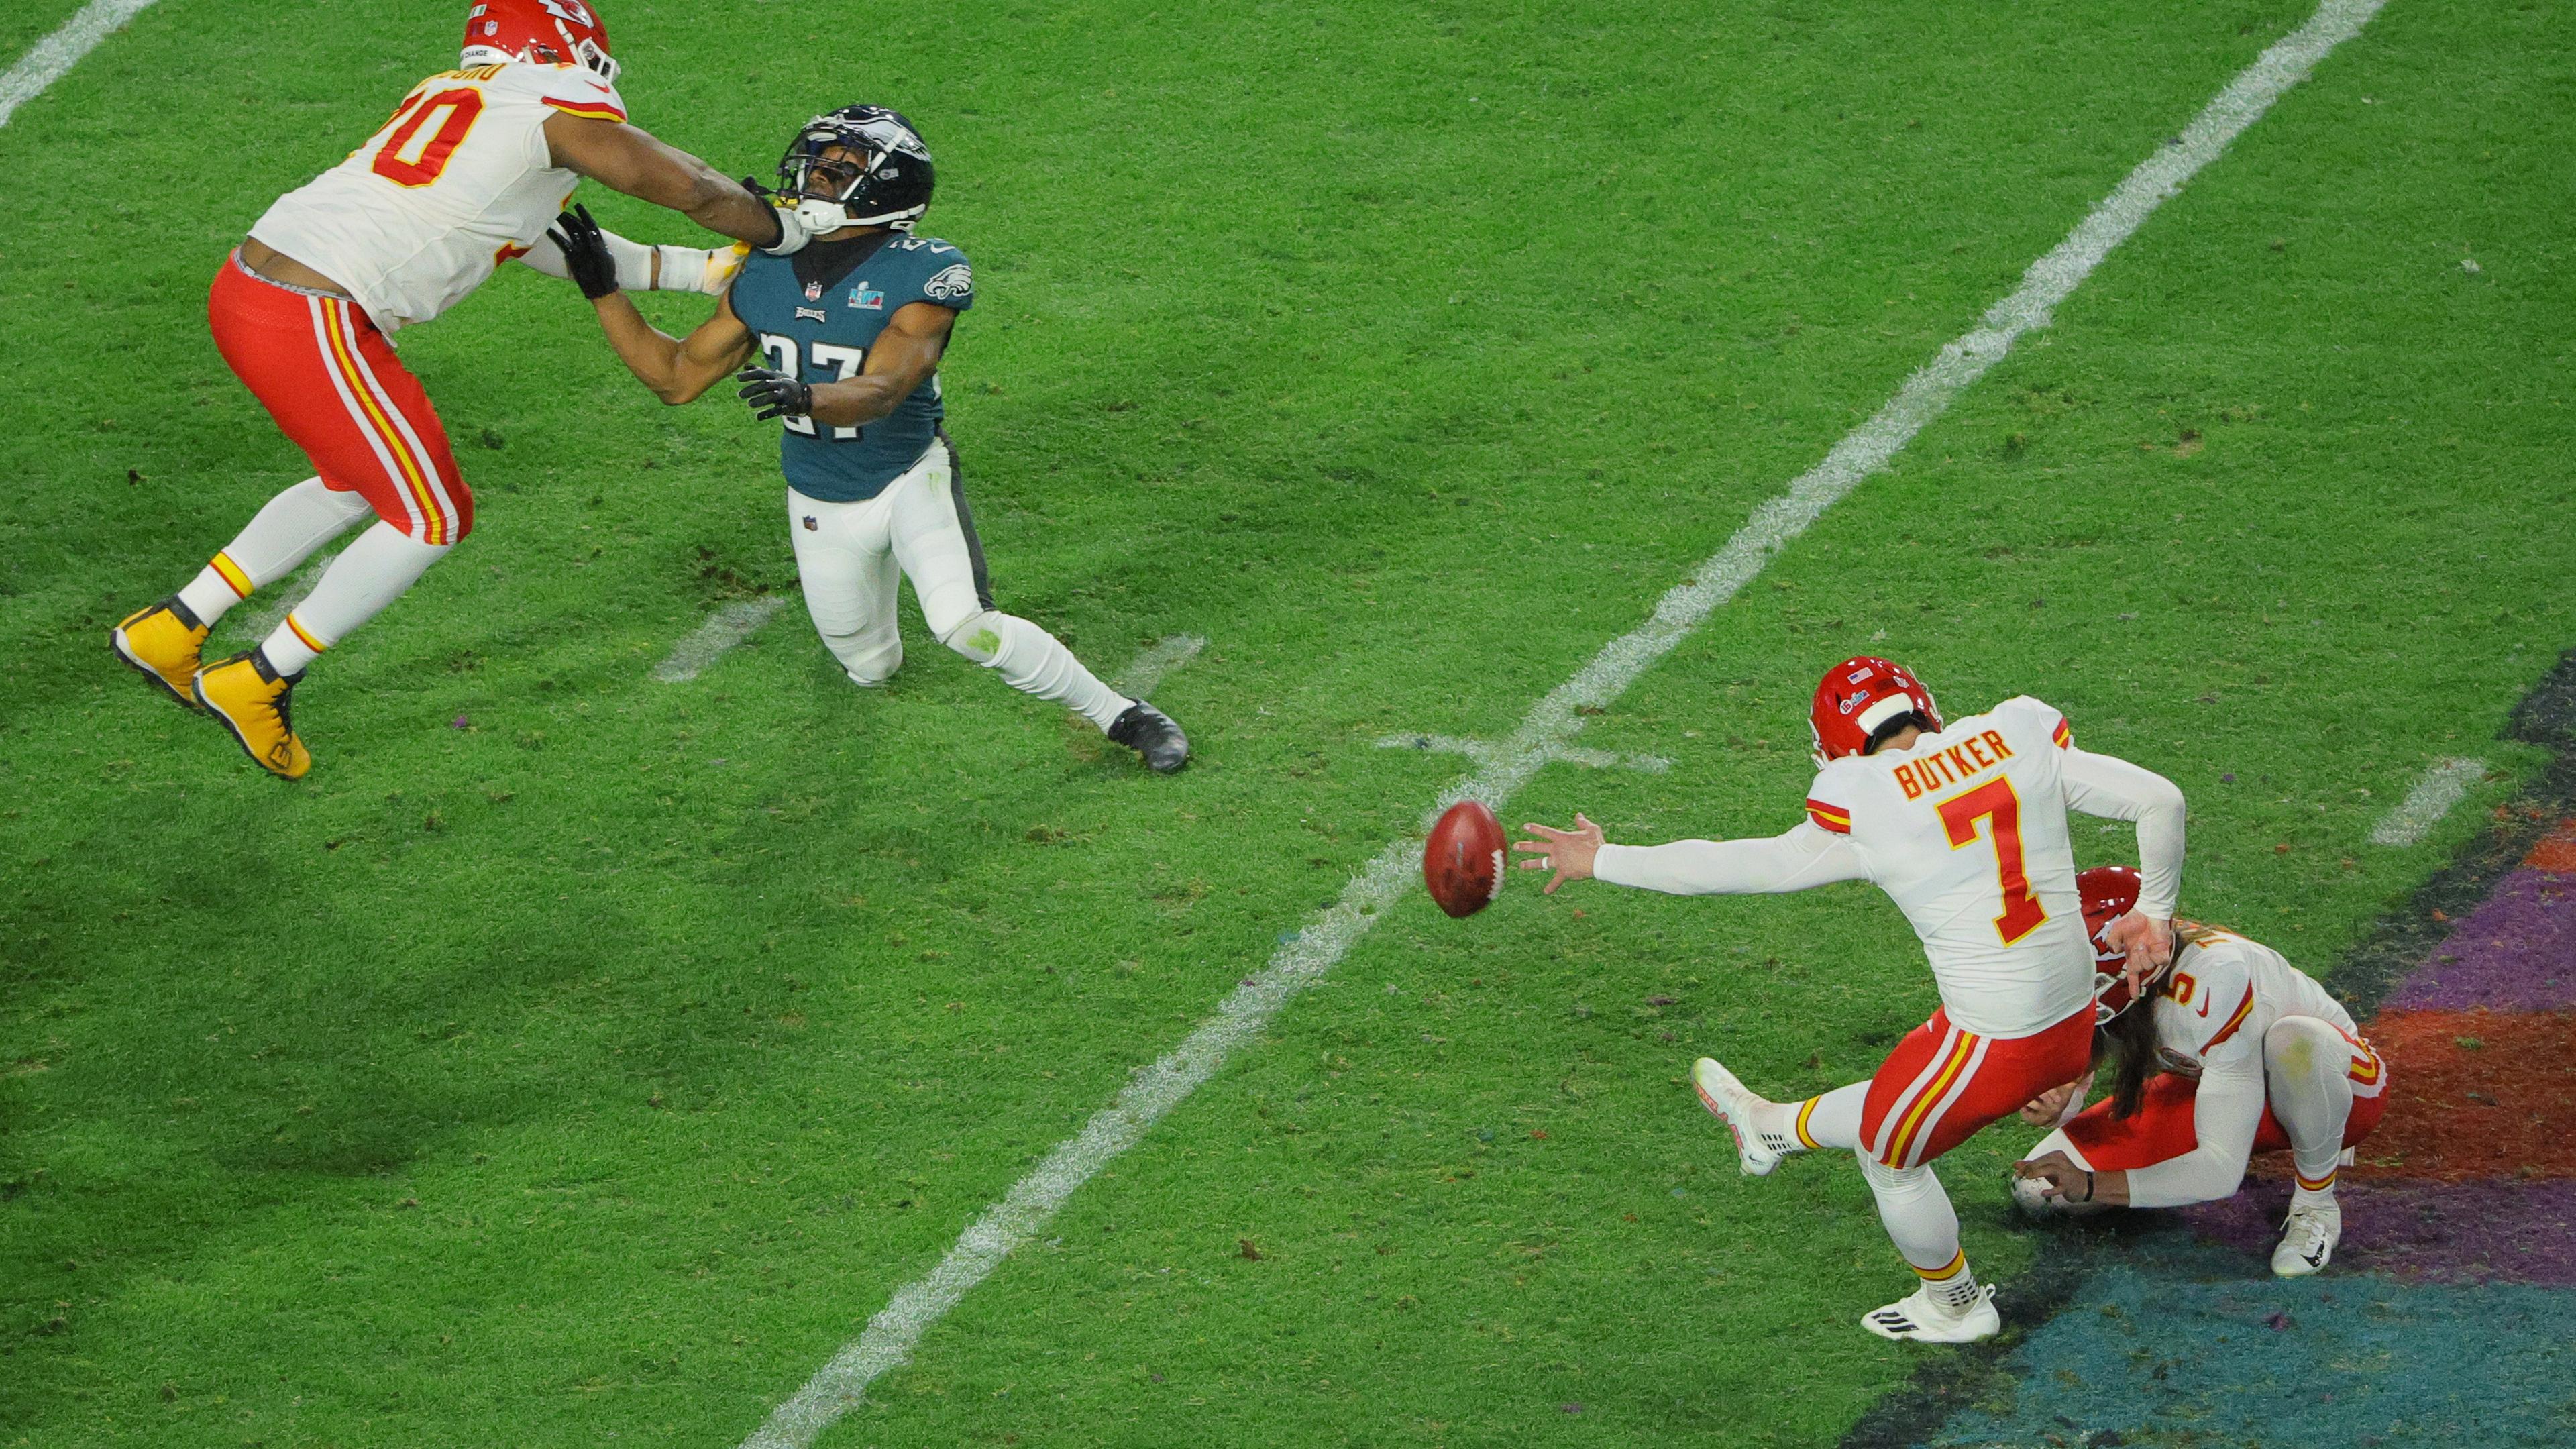 Football - NFL - Super Bowl, Kansas City Chiefs - Philadelphia Eagles: Harrison Butker macht mit einem Field Goal den entscheidenden Punkt.